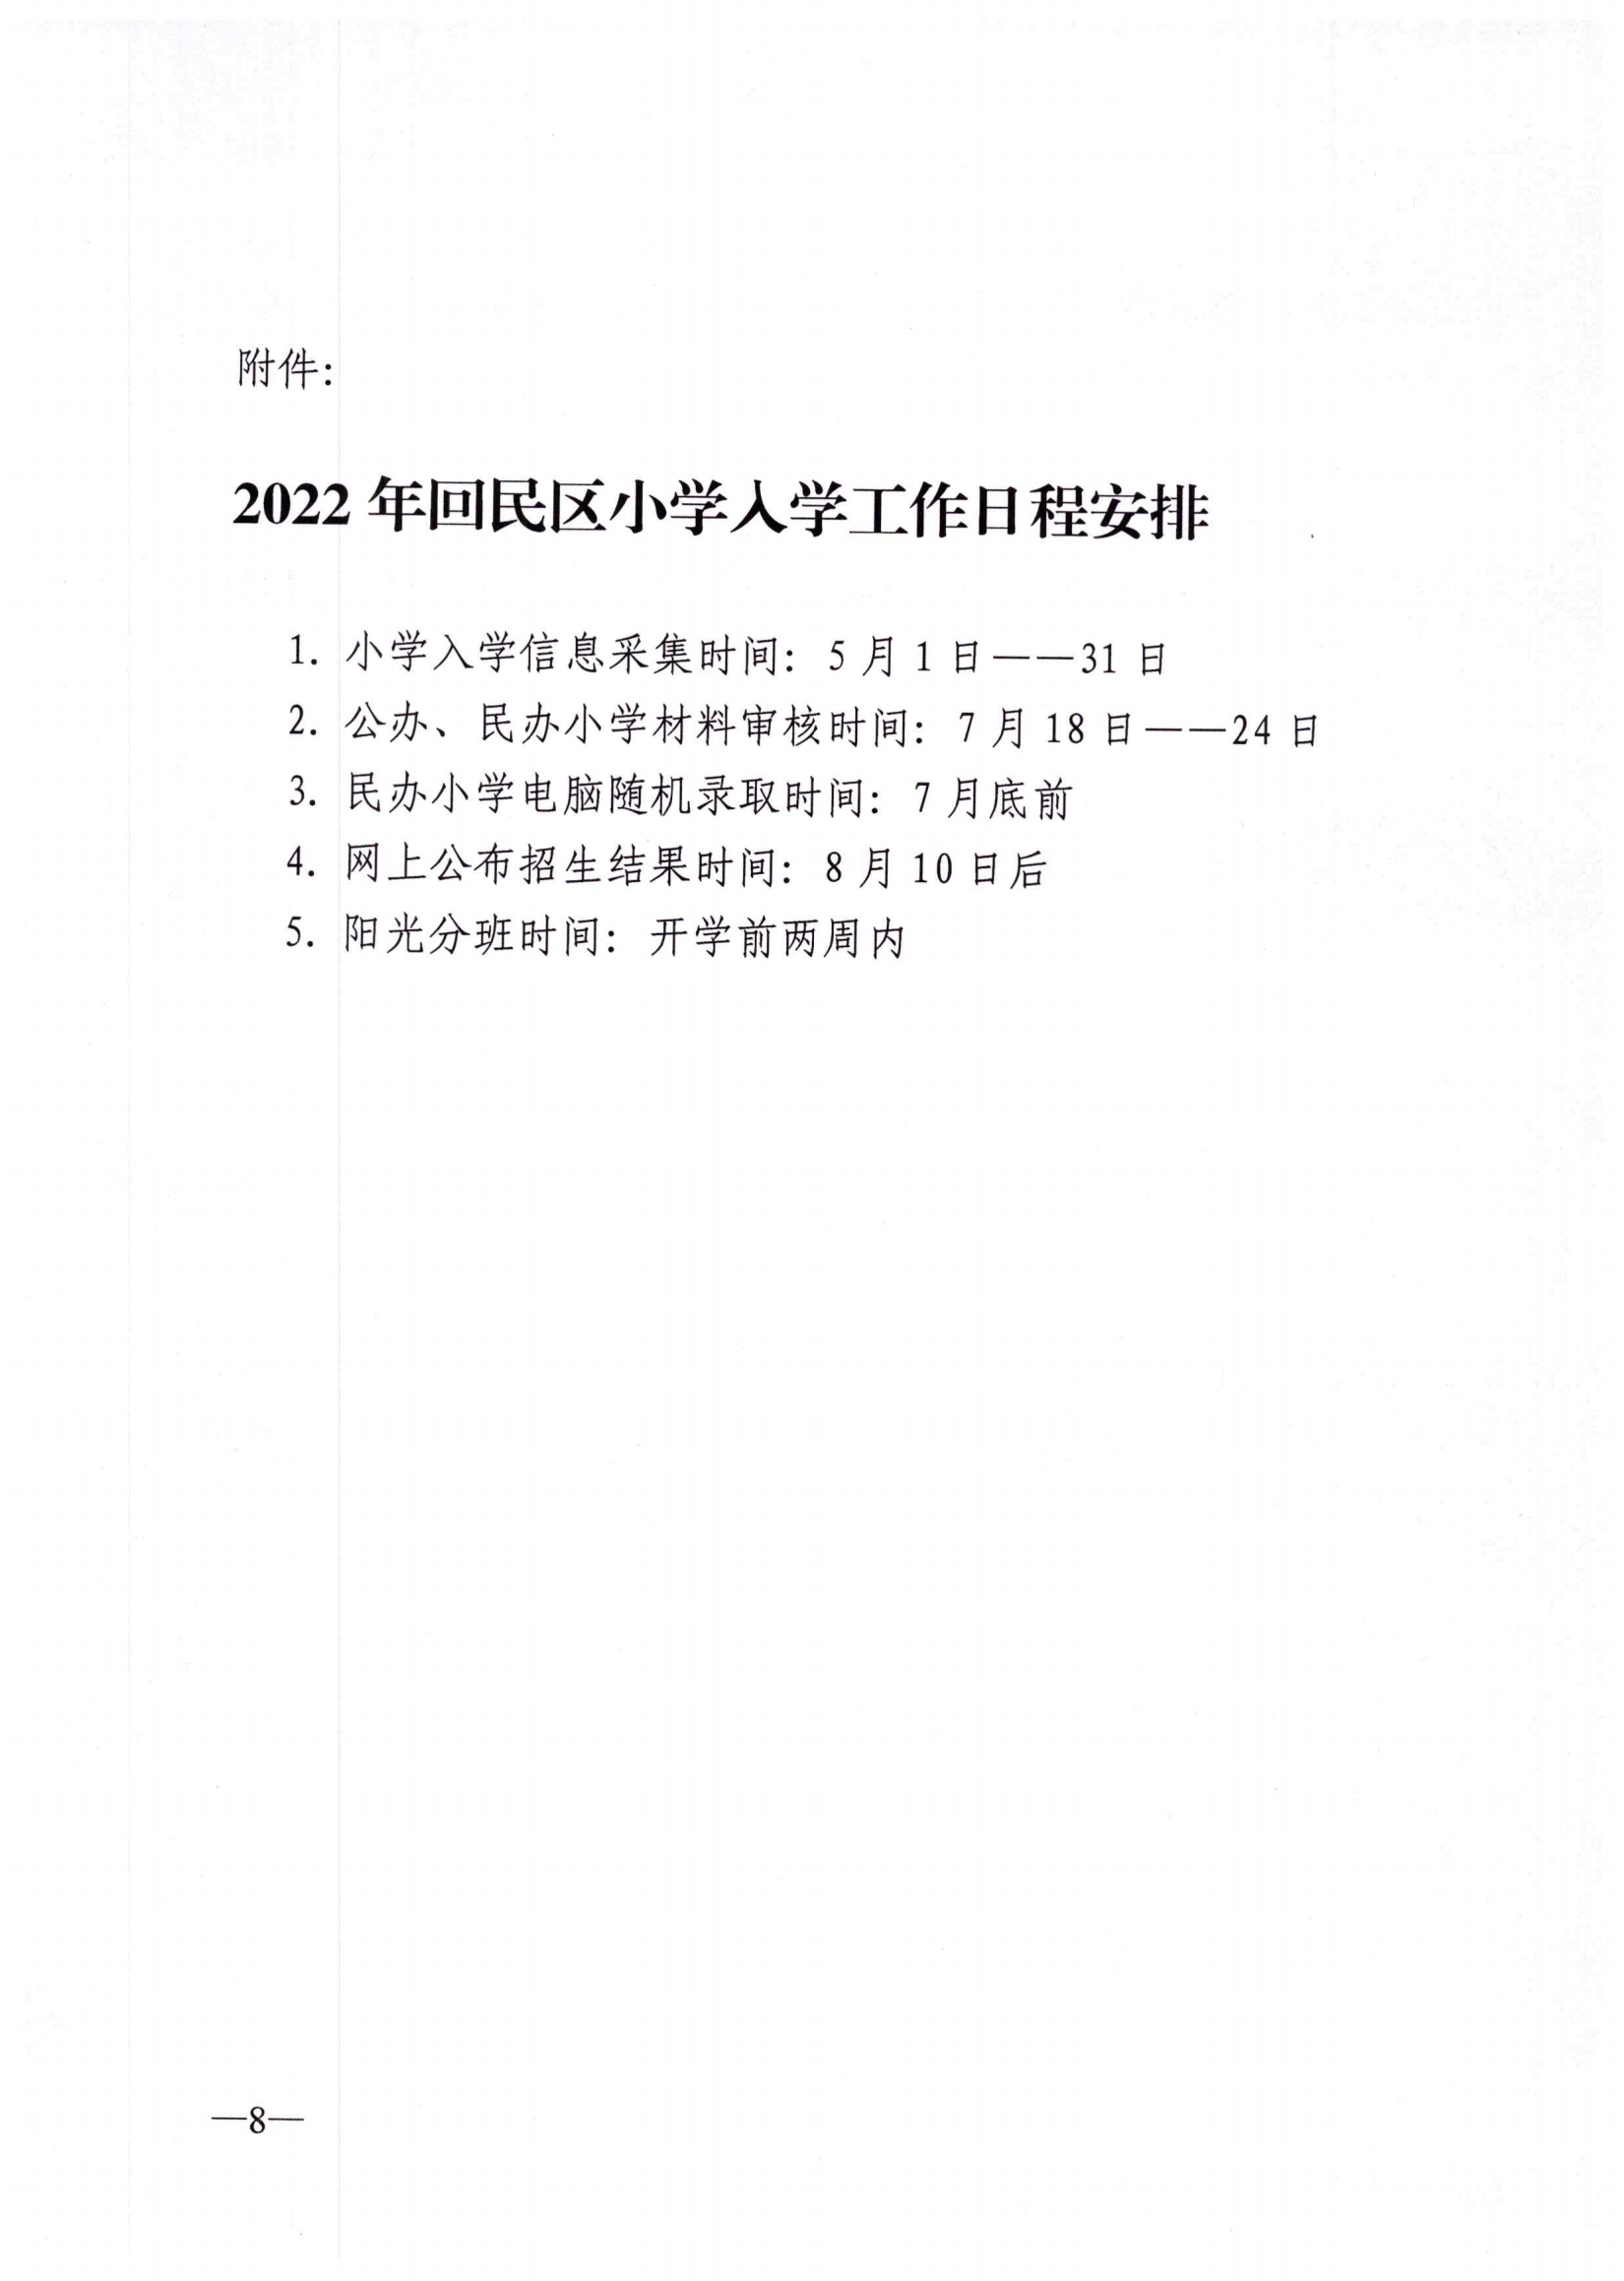 回民区2022年小学入学招生工作实施方案(1)_07.png